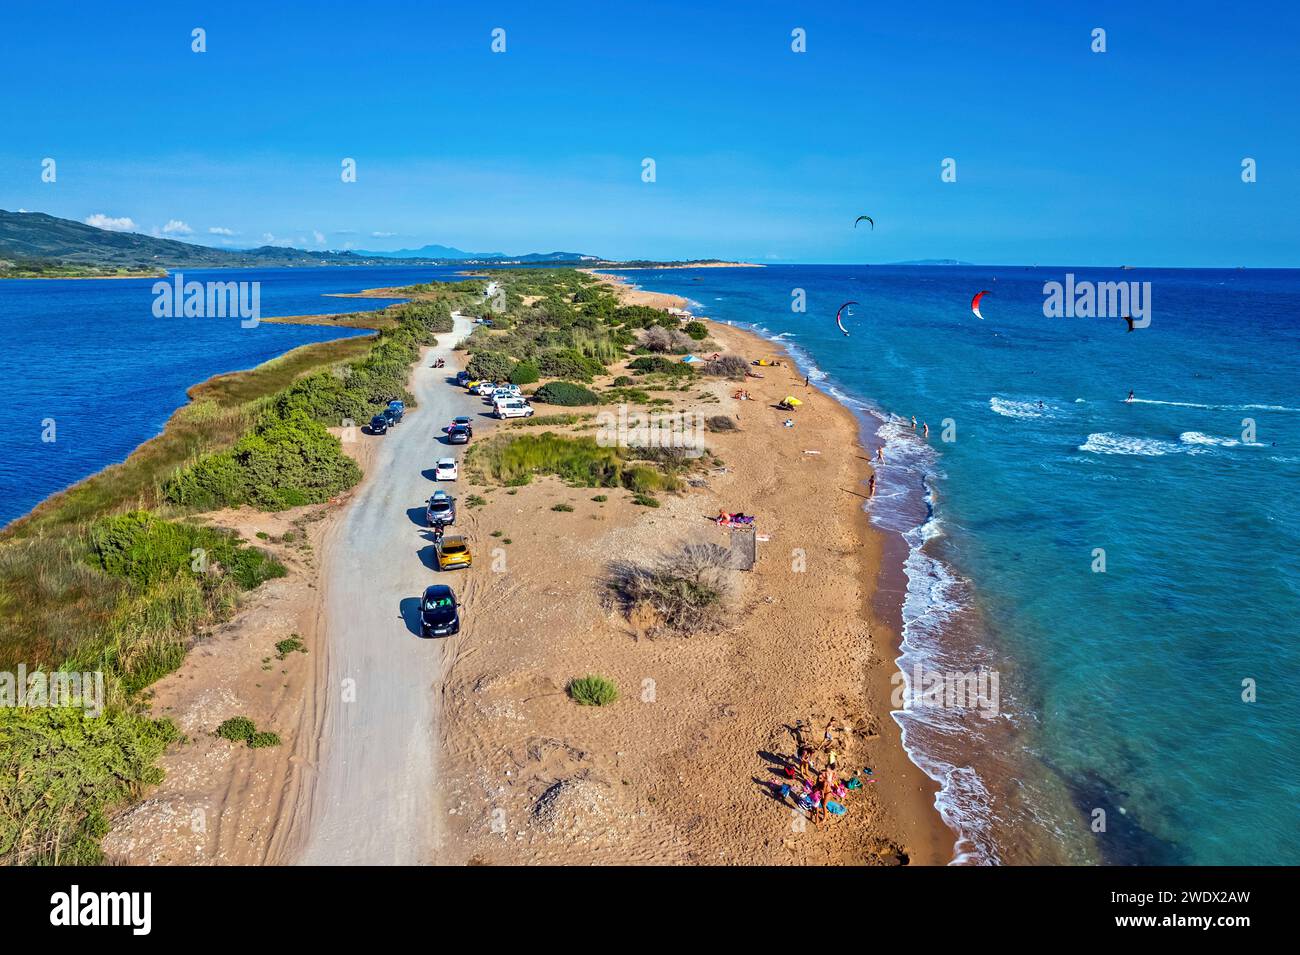 Vista aerea della spiaggia di Halikounas (proprio accanto al lago Korission) un "paradiso" dei kitesurfer nell'isola di Corfù, nel mar Ionio, in Grecia. Foto Stock